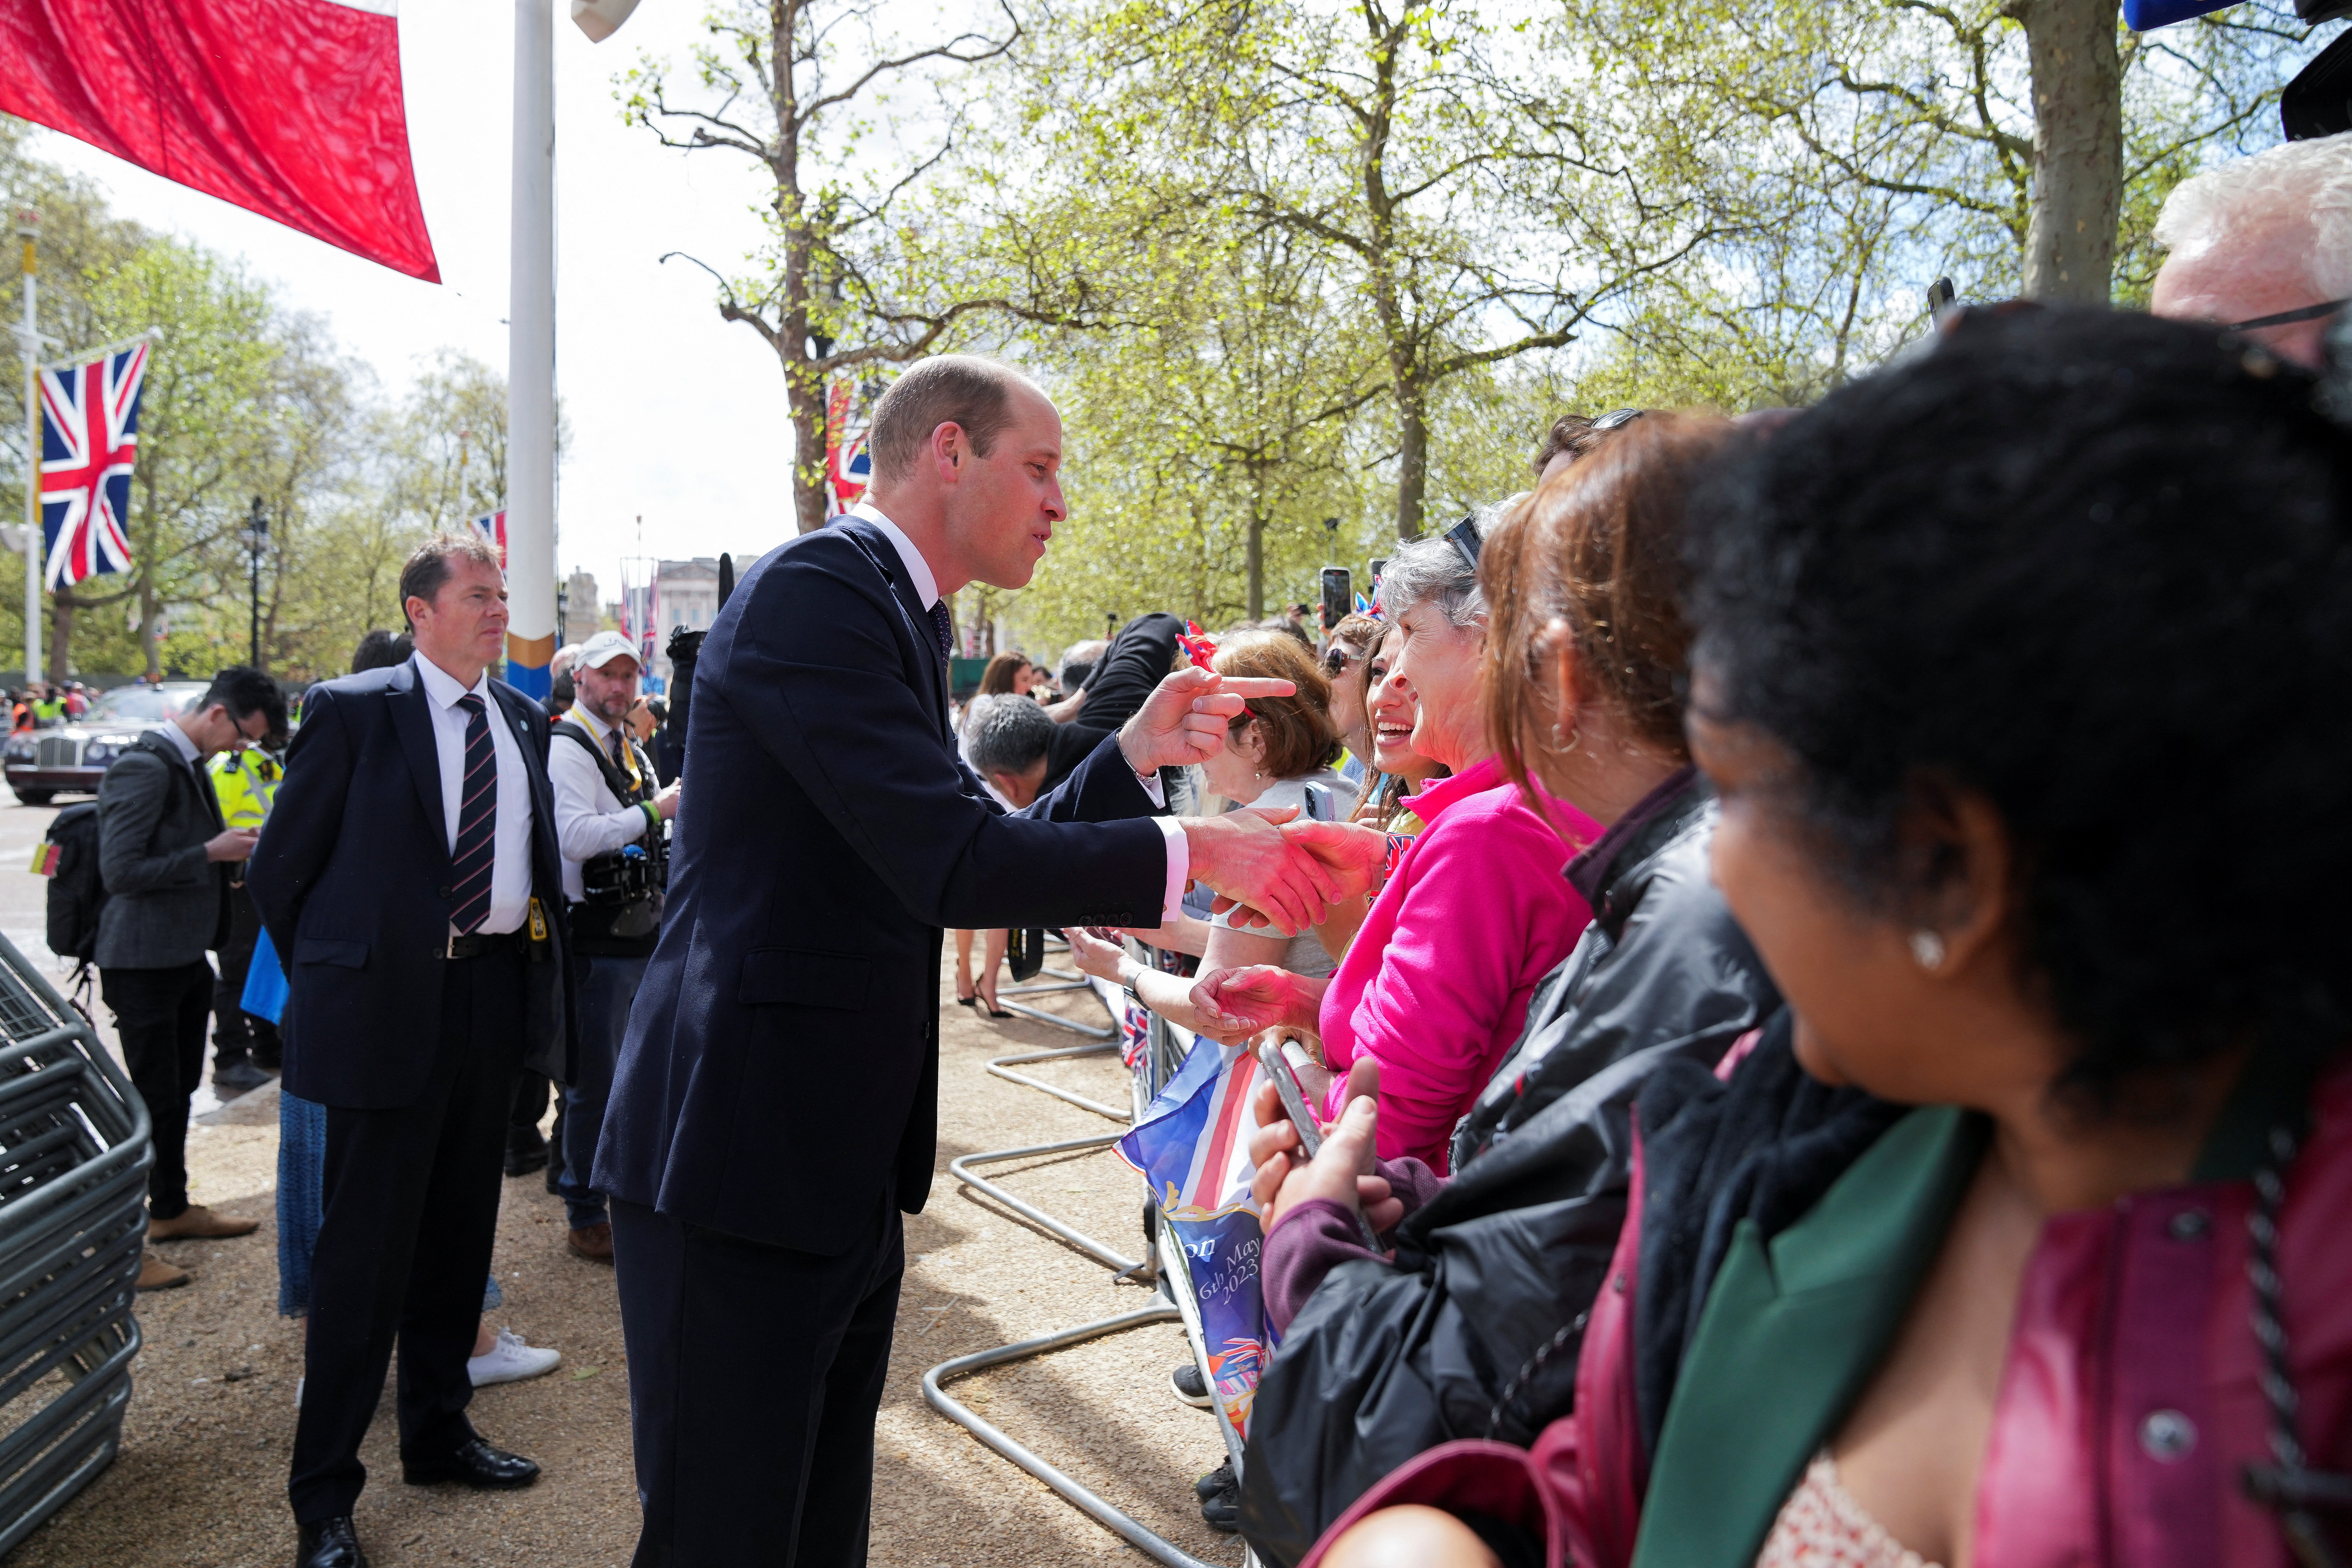 El príncipe Guillermo de Gran Bretaña saludando a los ciudadanos en el Palacio de Buckingham antes de la coronación del rey Carlos y Camilla. REUTERS/Maja Smiejkowska